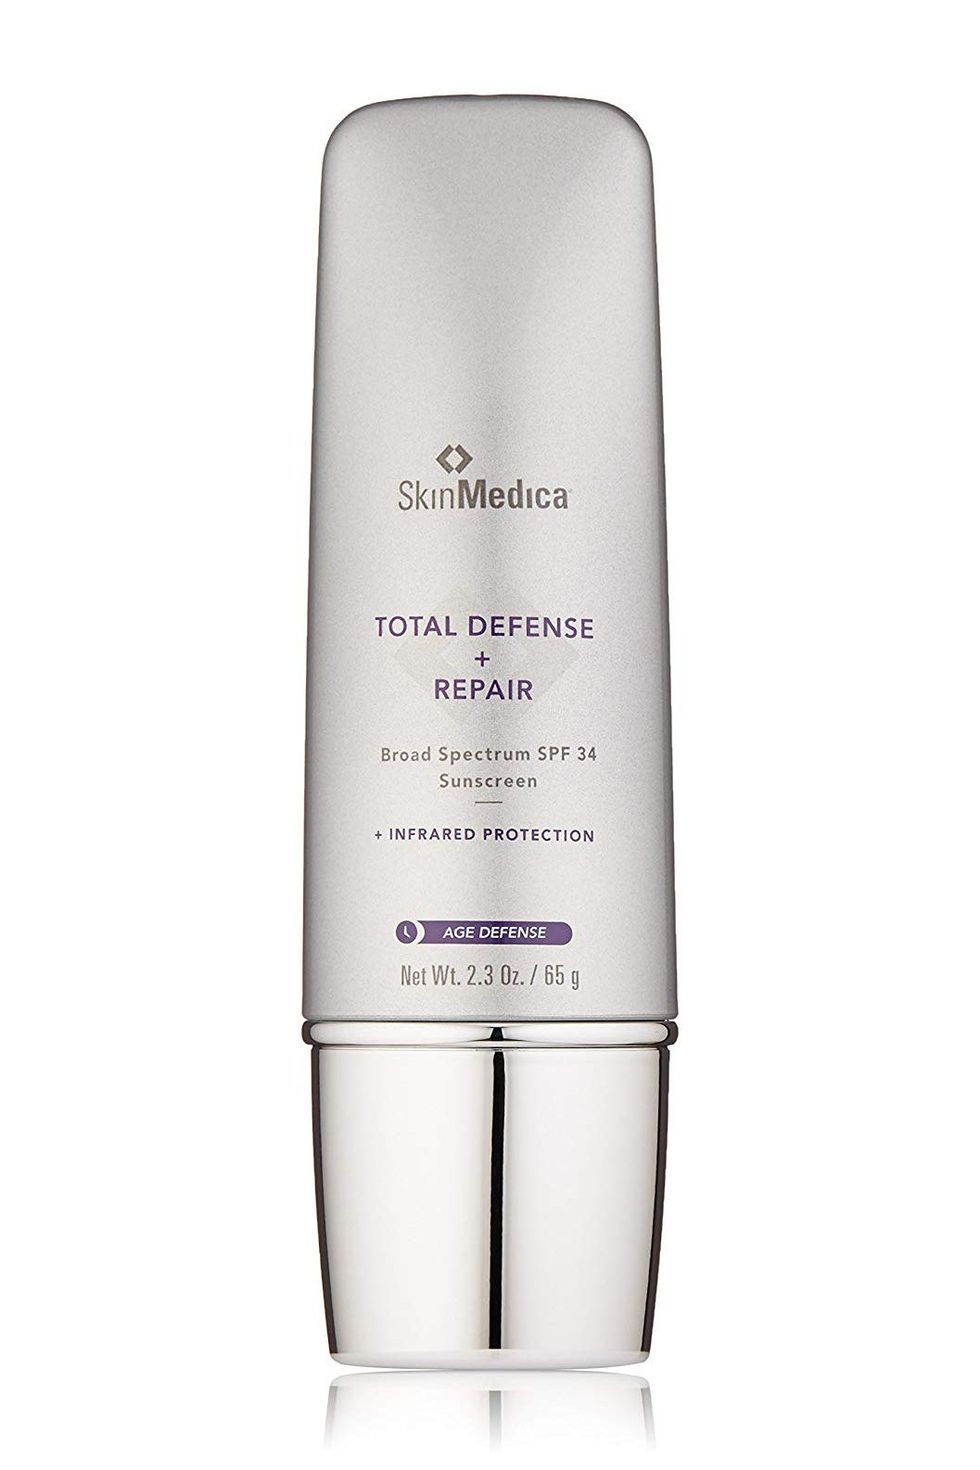 For Aging Skin: SkinMedica Total Defense + Repair Broad Spectrum Sunscreen SPF 34 